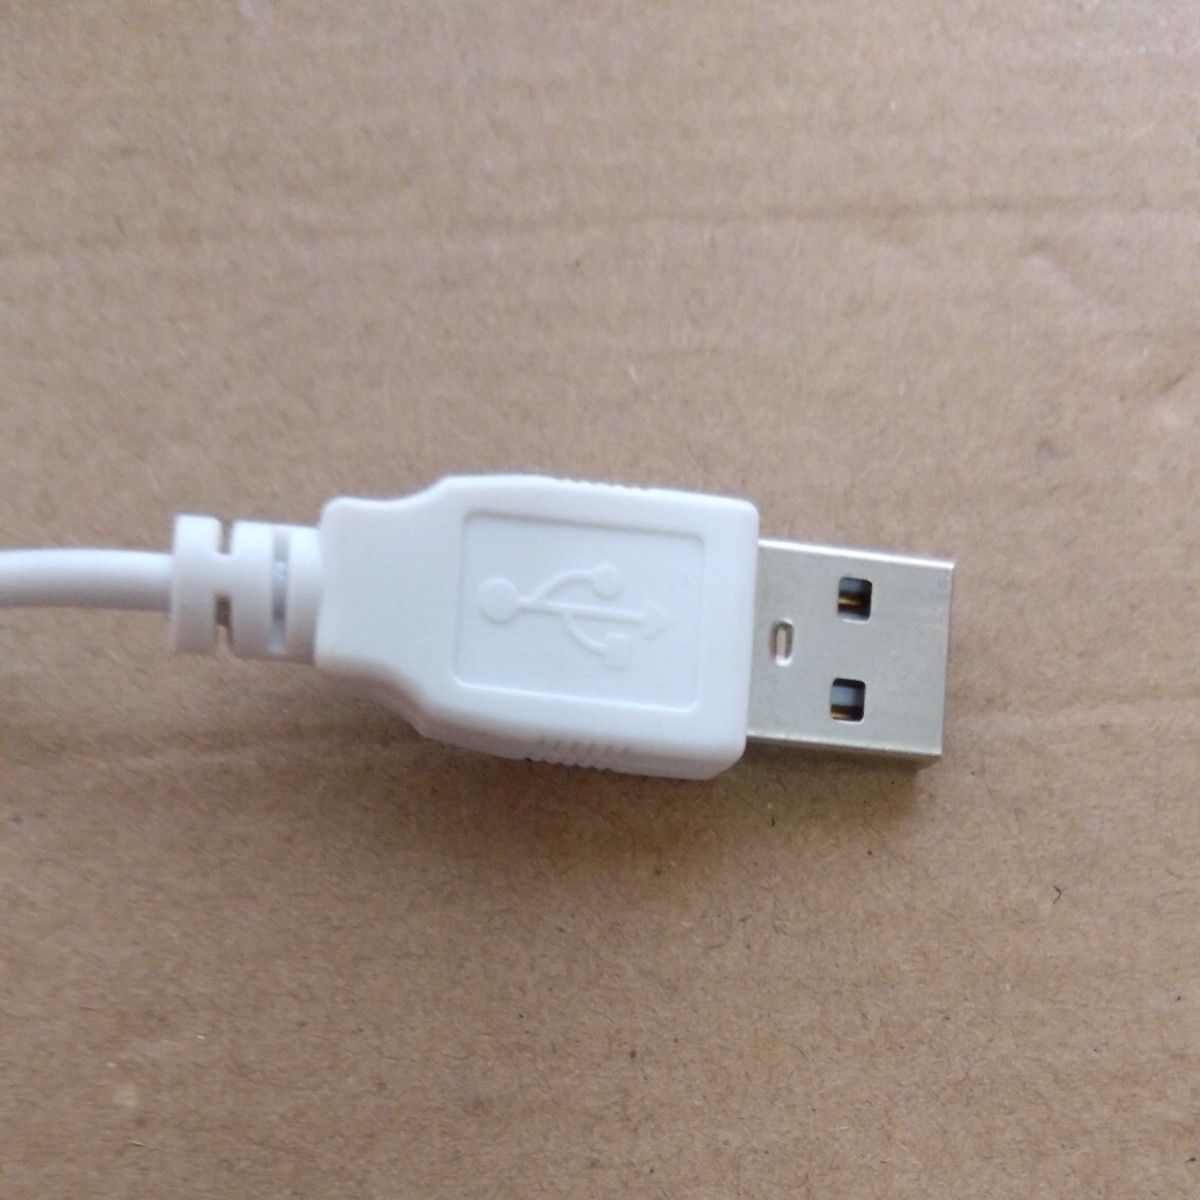 サンコー ネッククーラー Neo TK-NECK2-WH （ホワイト）熱中症対策 暑さ対策 首冷却 クールダウン USB電源 